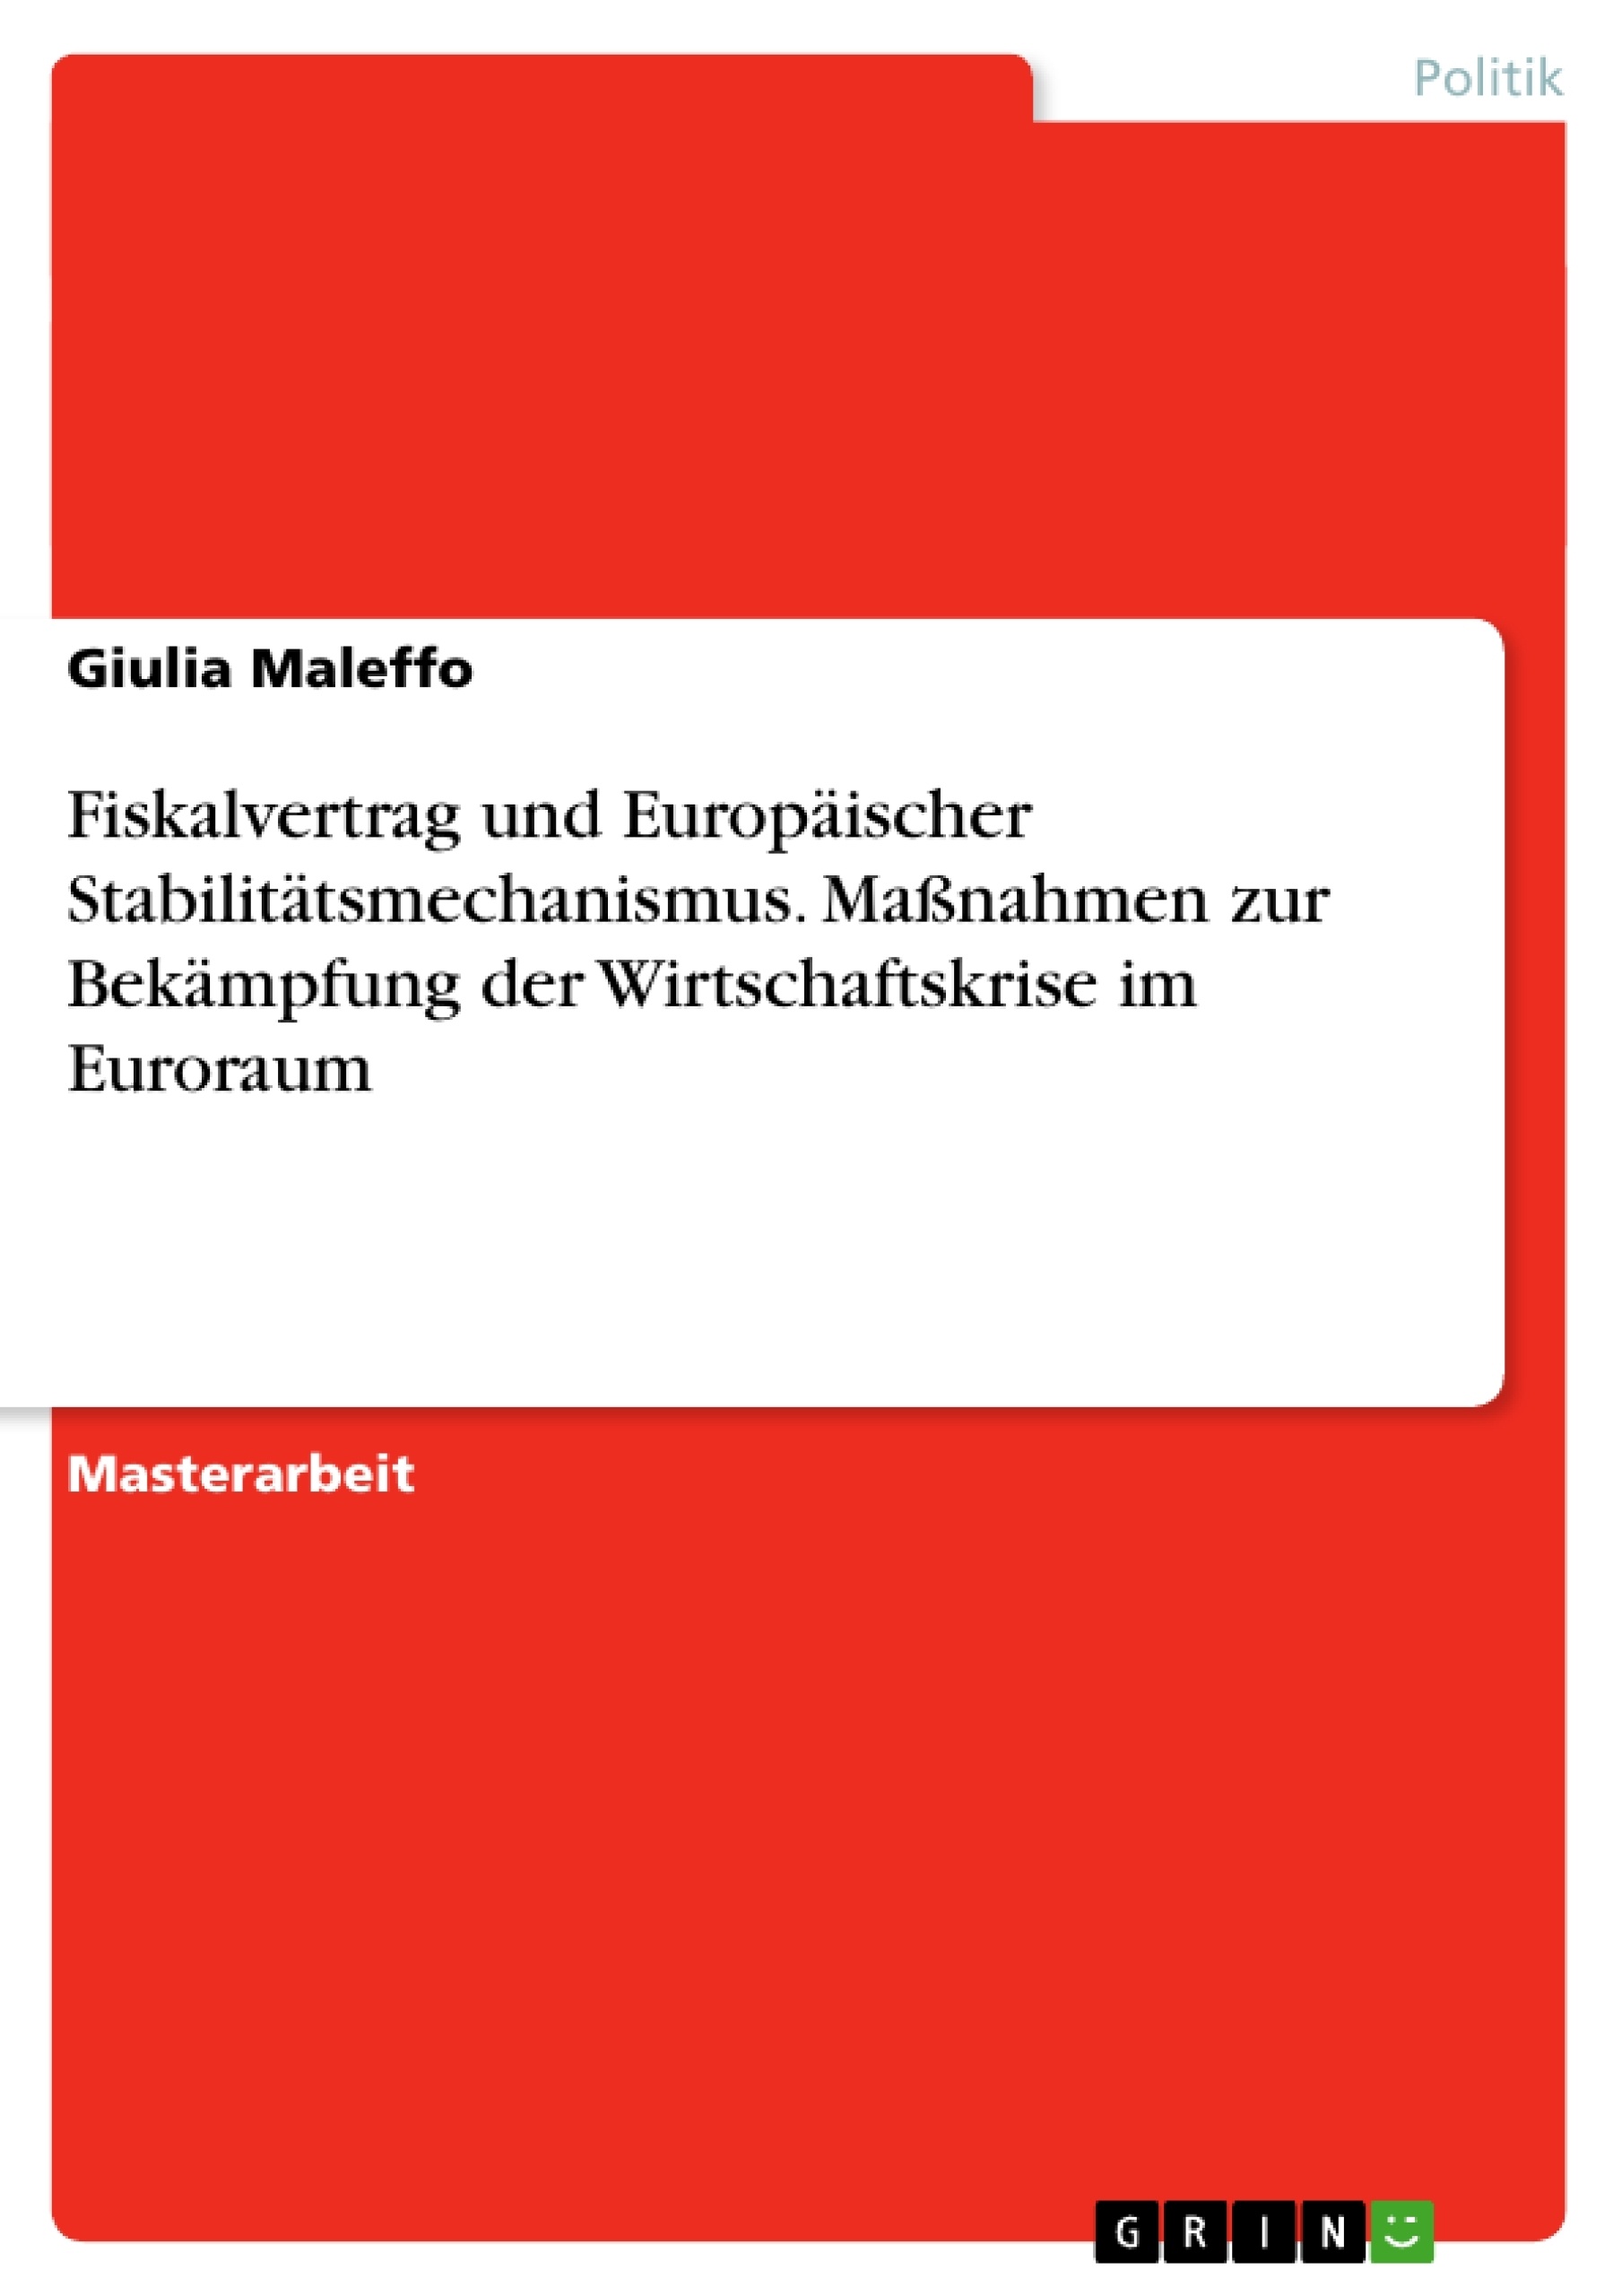 Title: Fiskalvertrag und Europäischer Stabilitätsmechanismus. Maßnahmen zur Bekämpfung der Wirtschaftskrise im Euroraum